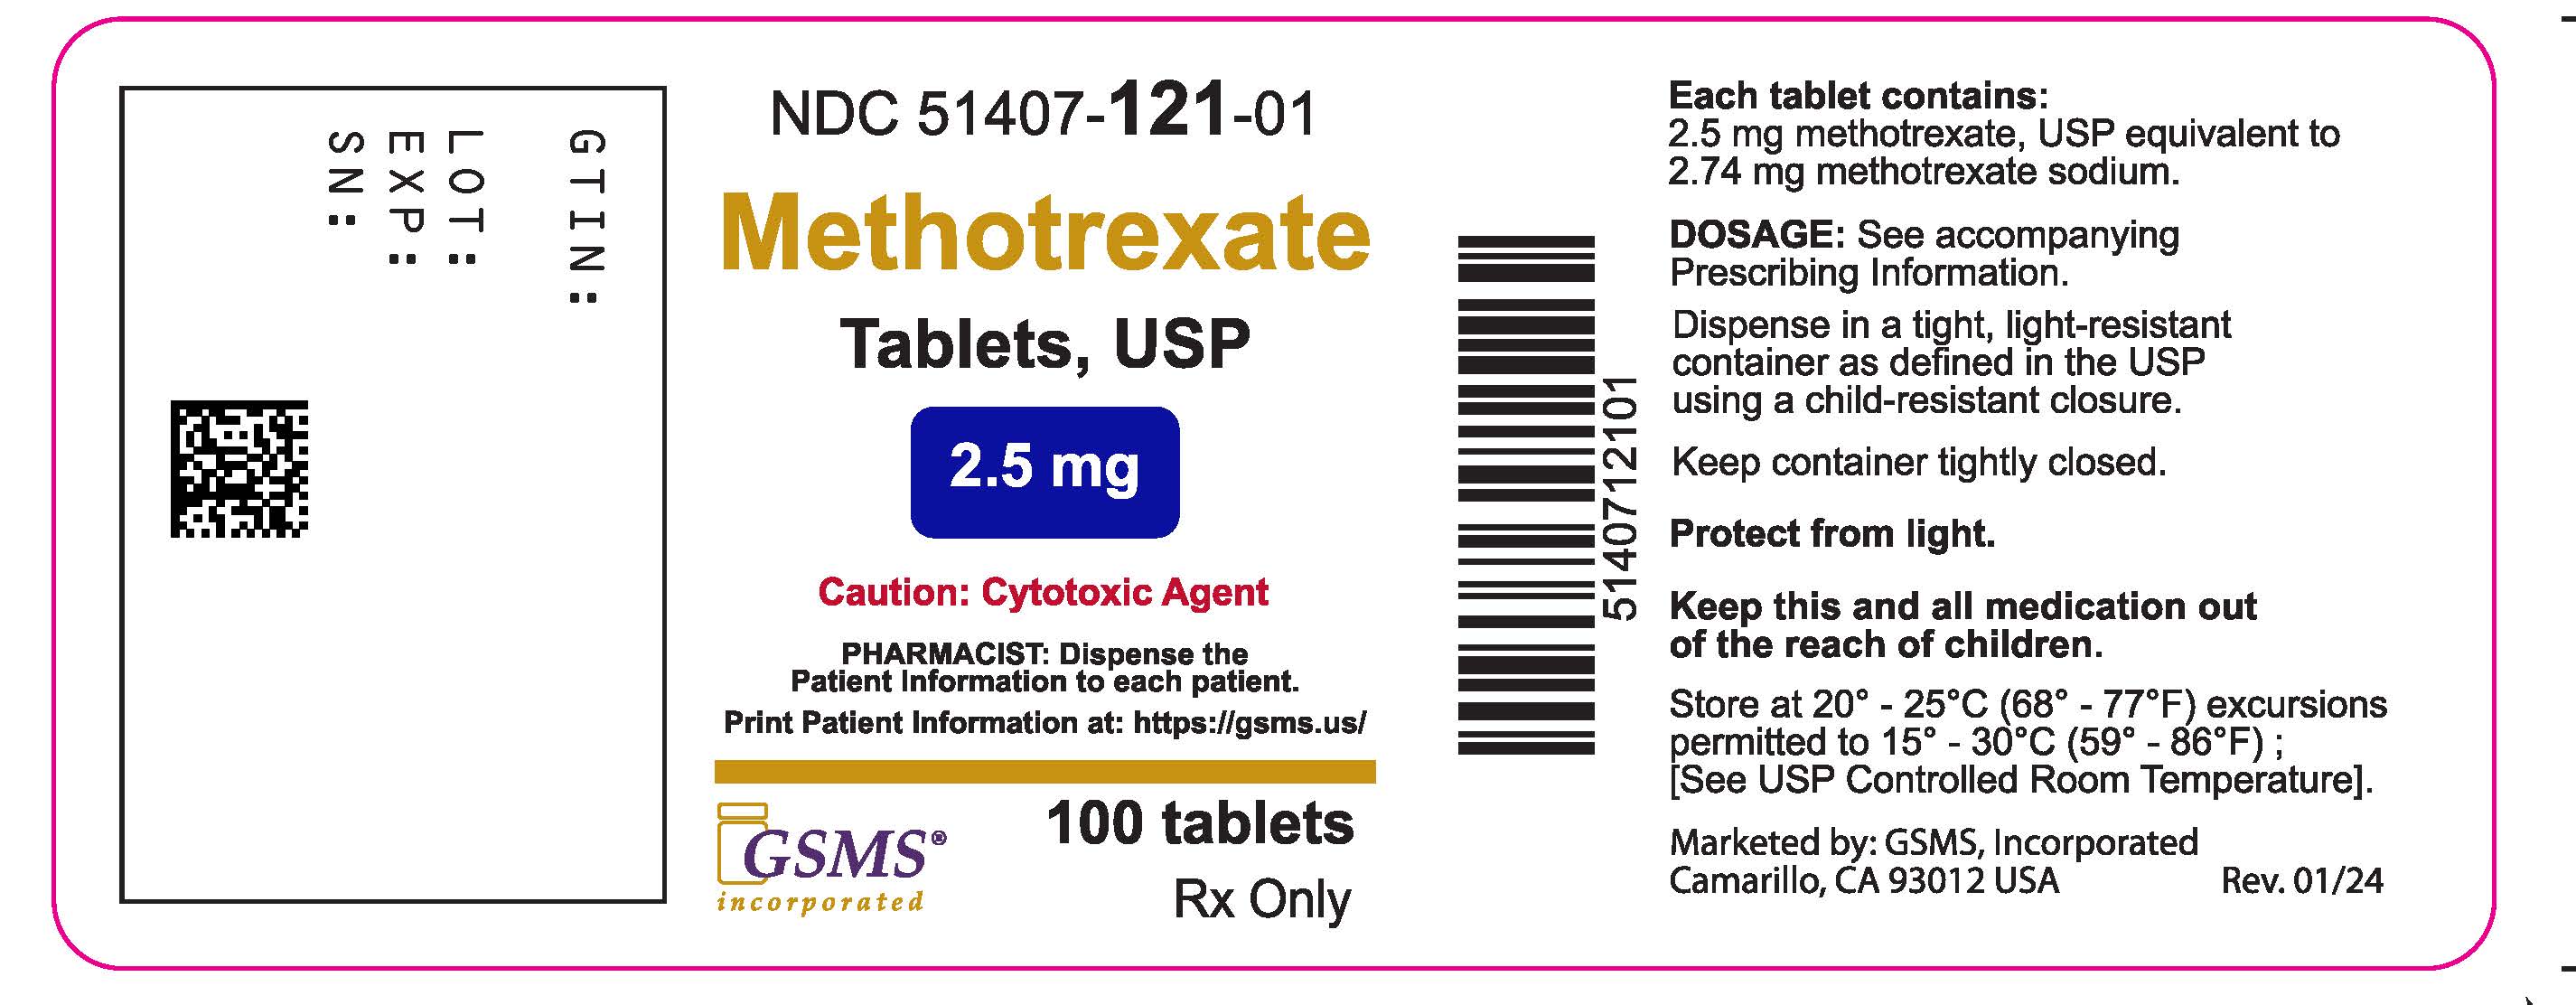 51407-121-01LB - Methotrexate 2.5 mg - Rev. 0124.jpg